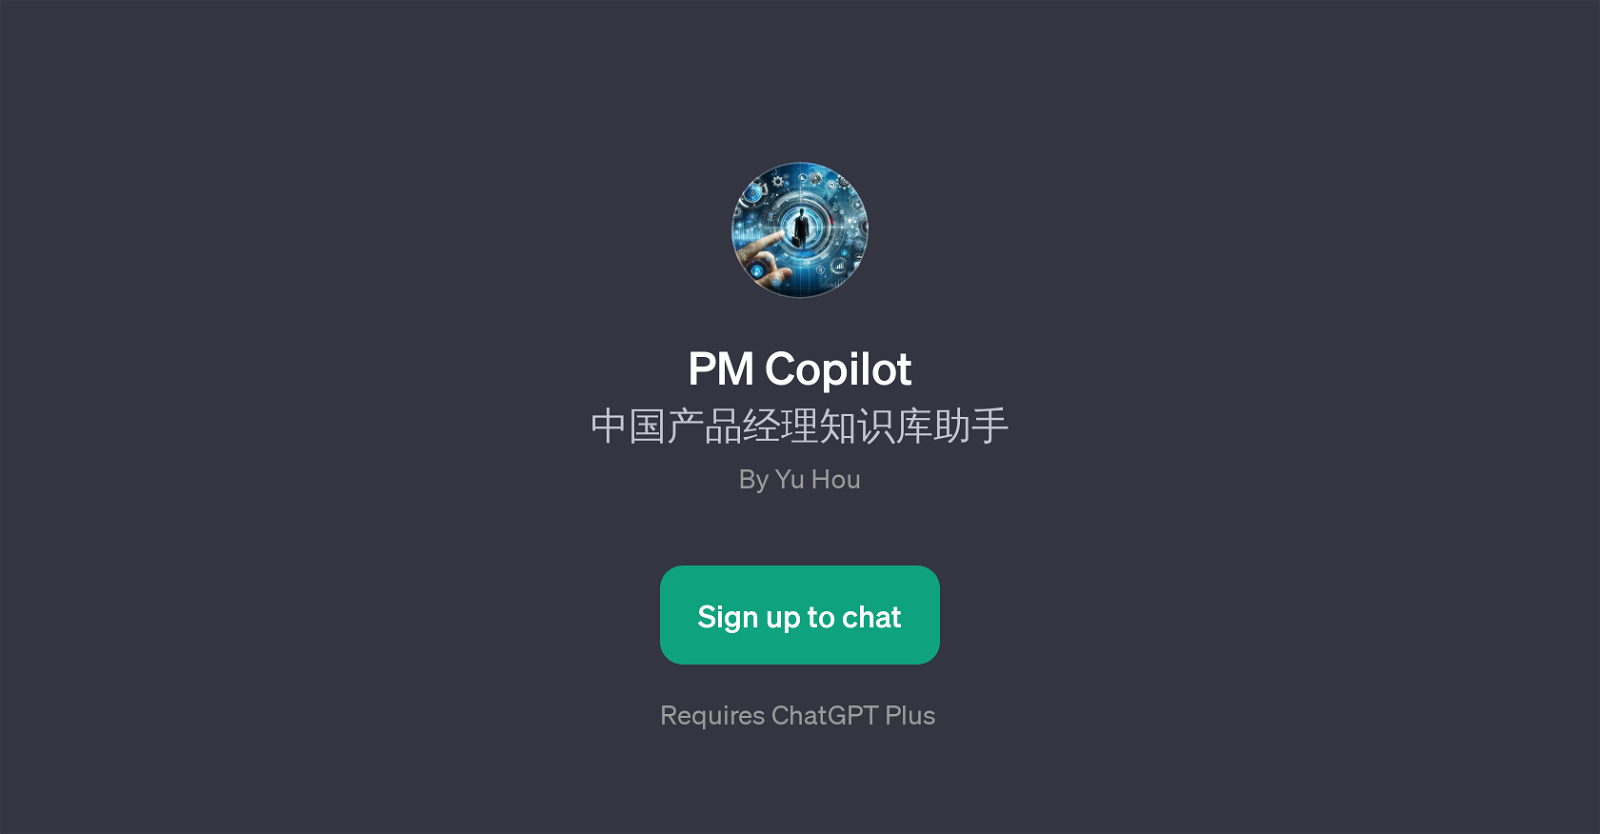 PM Copilot website